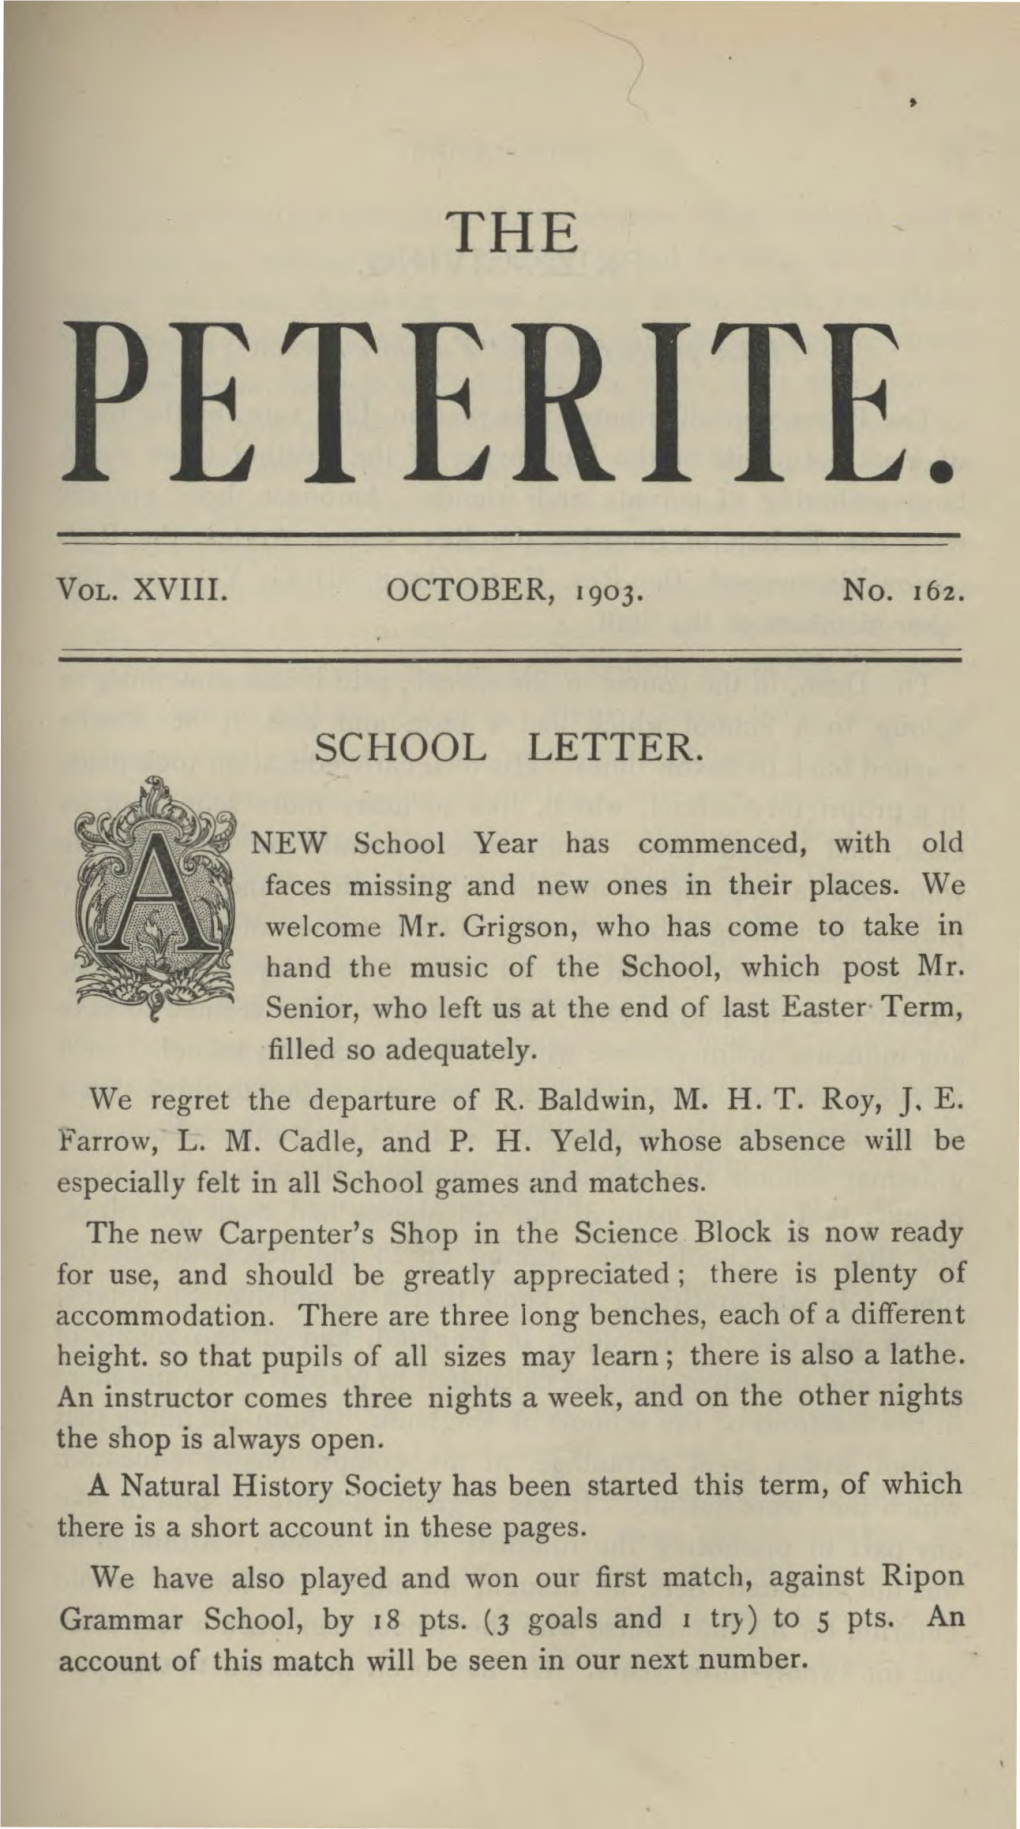 School Letter